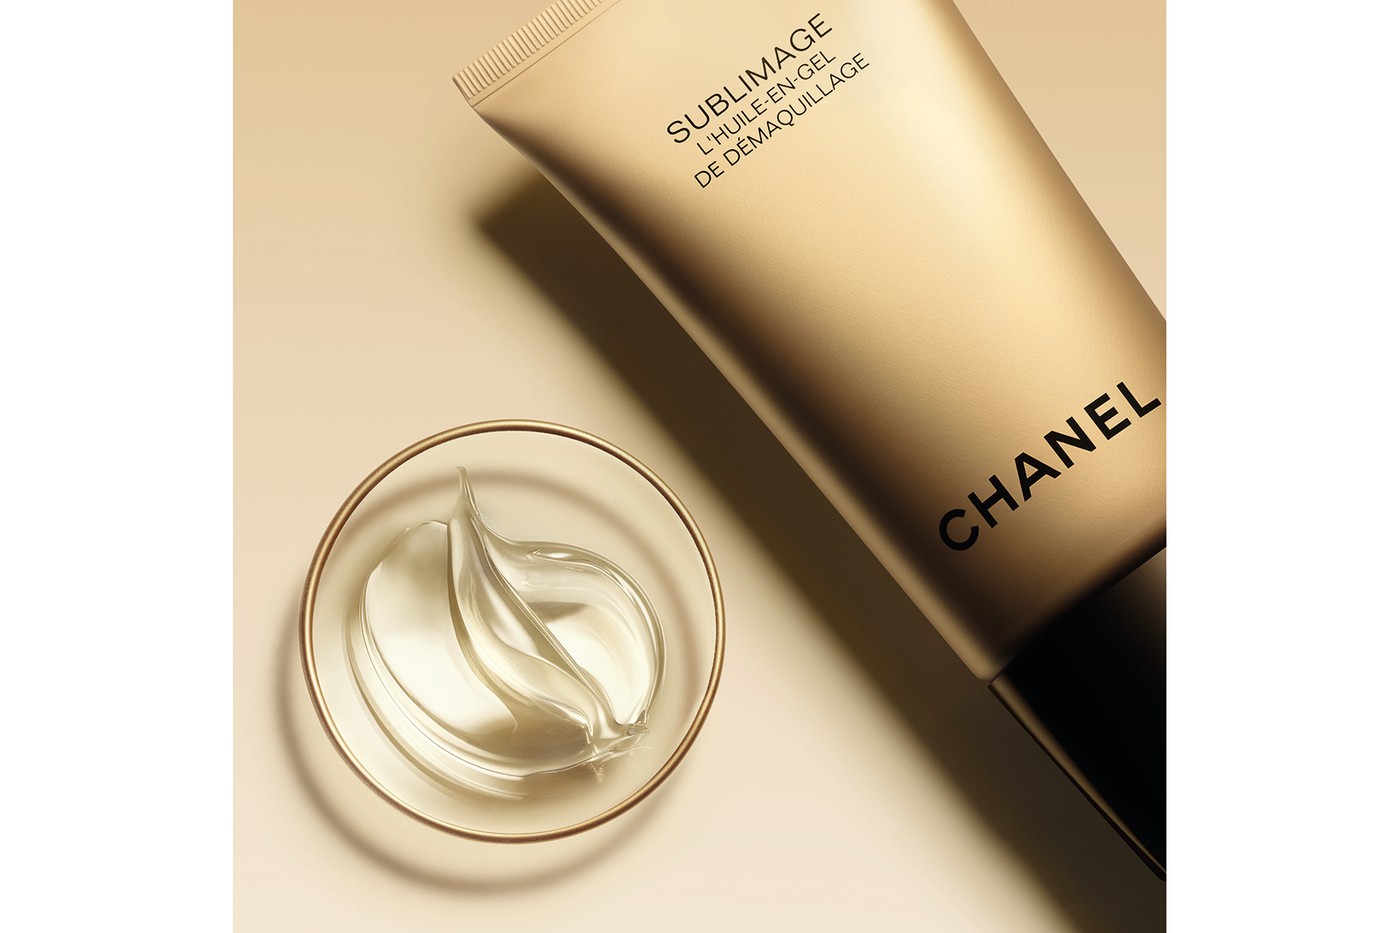 Chanel представили новую очищающую коллекцию для лица